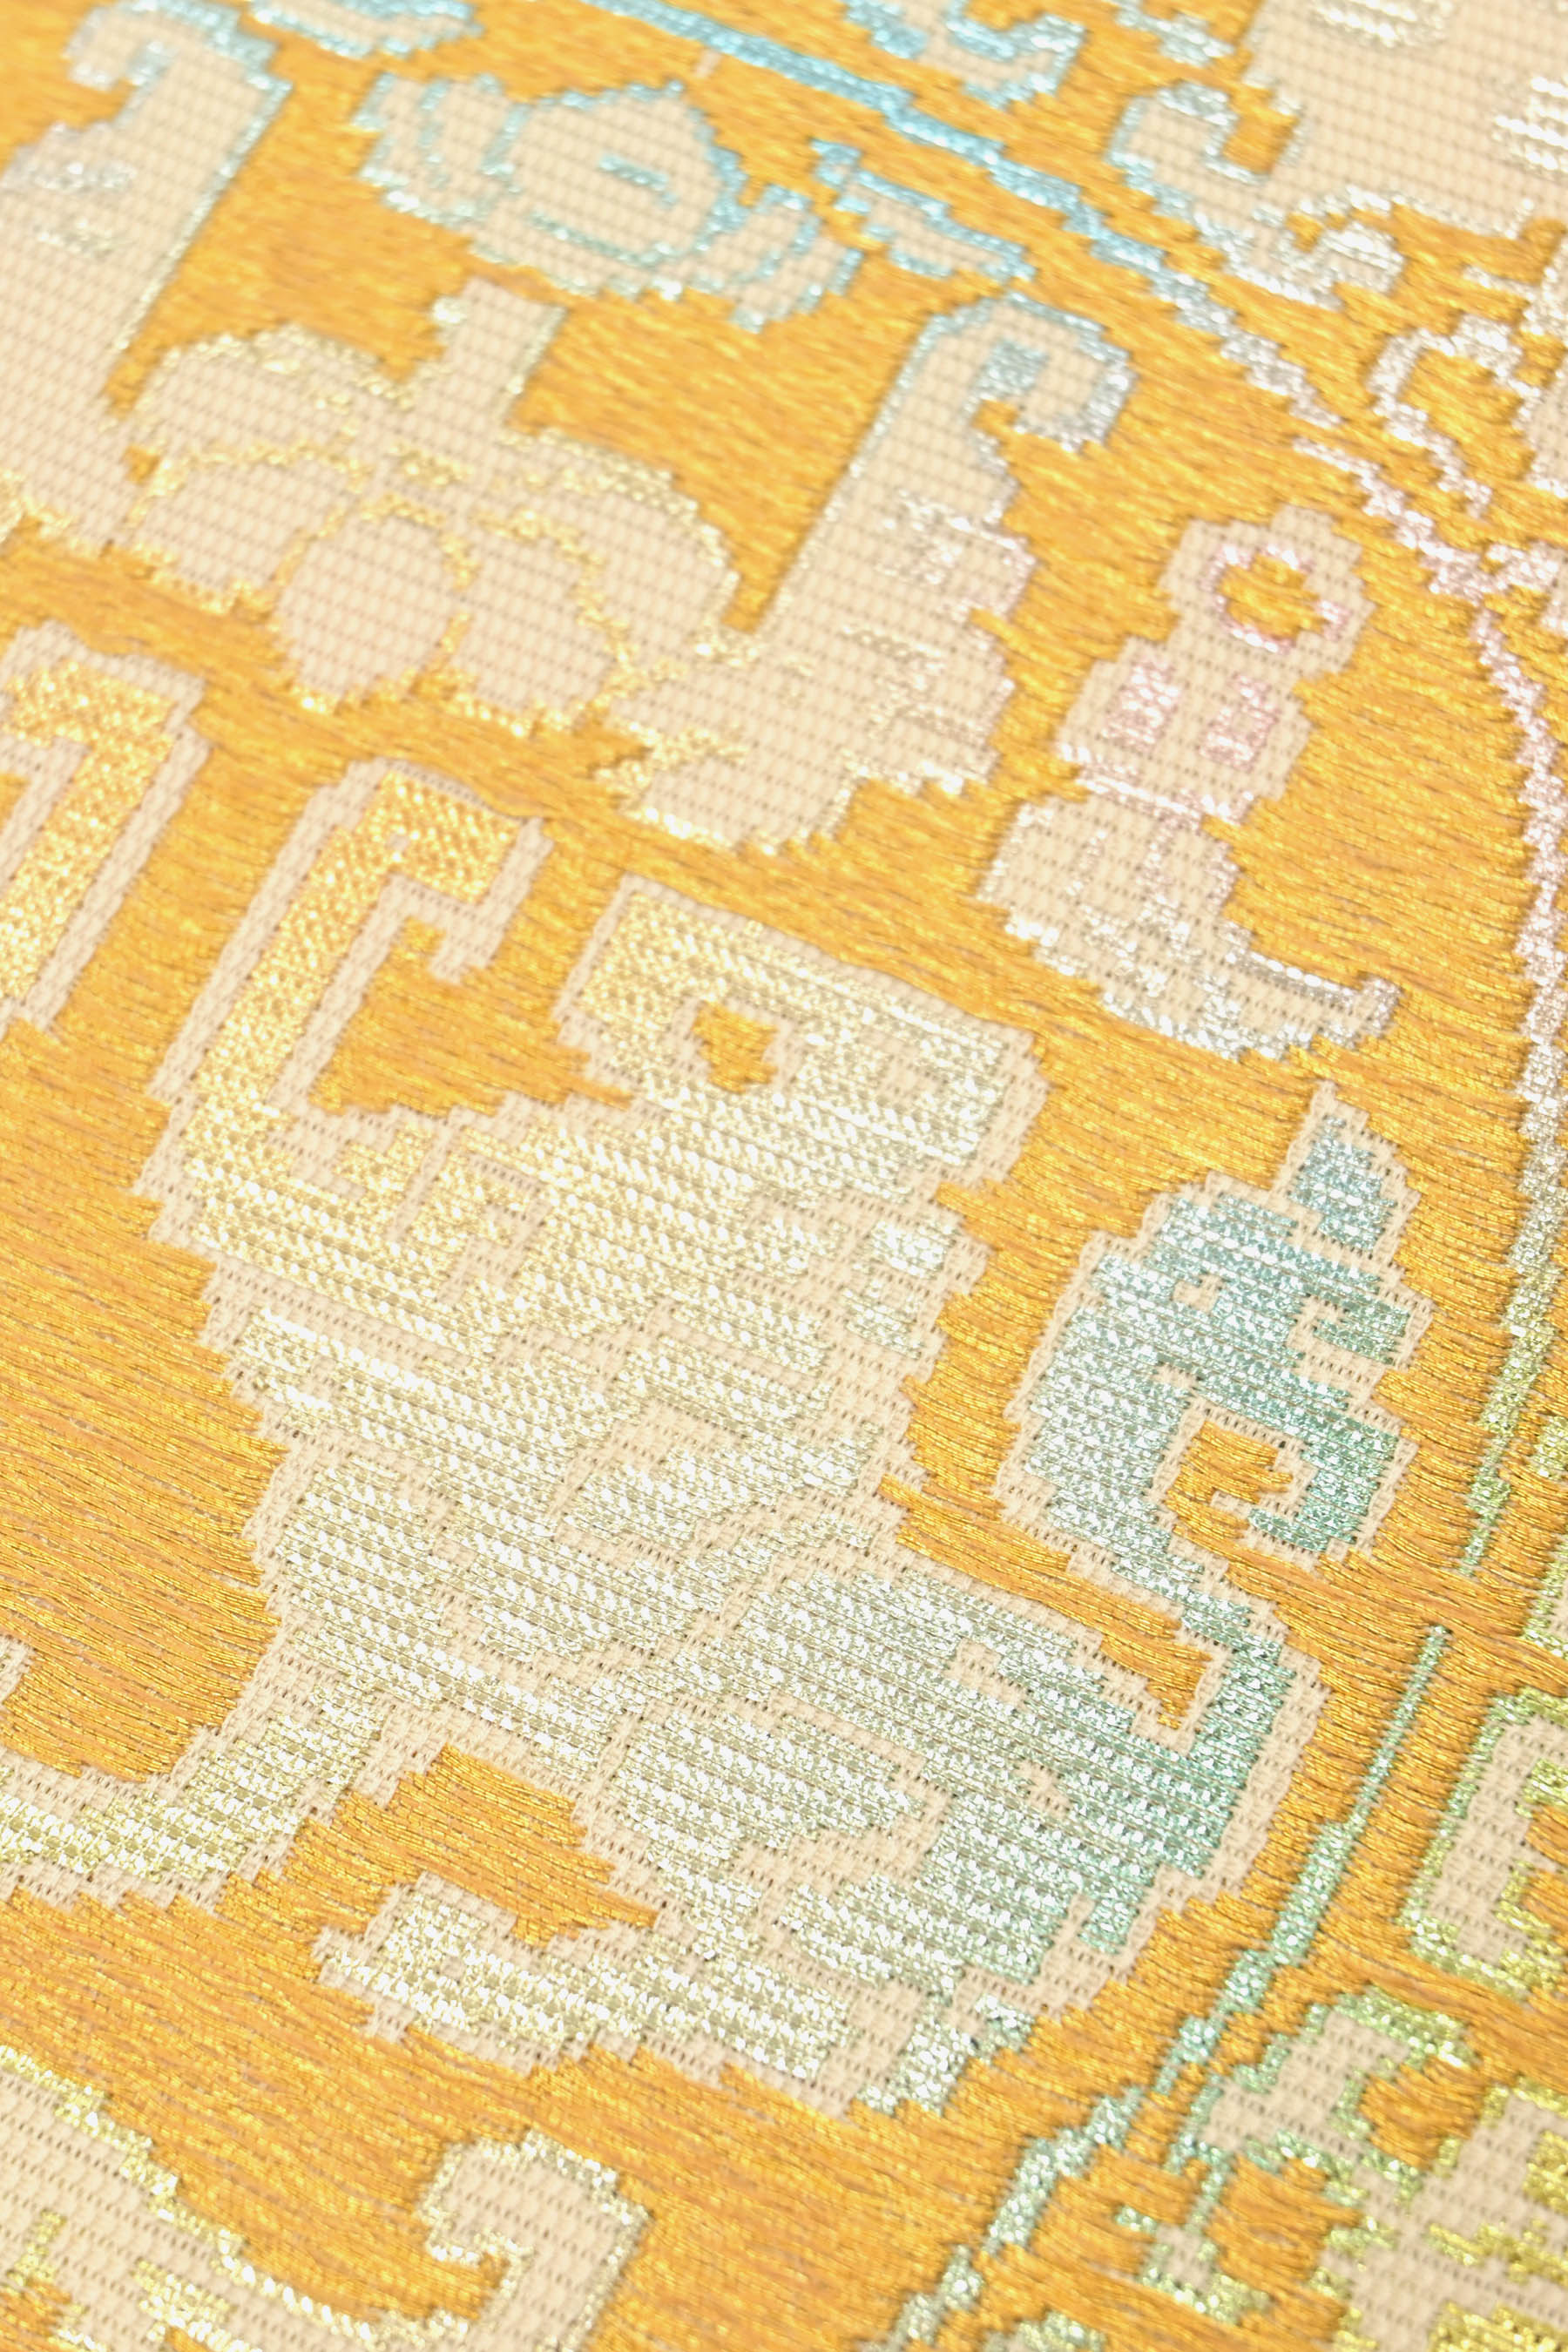 龍村平蔵製の夏帯 籠目絽 かわせみ文 最高級の夏のアンティーク